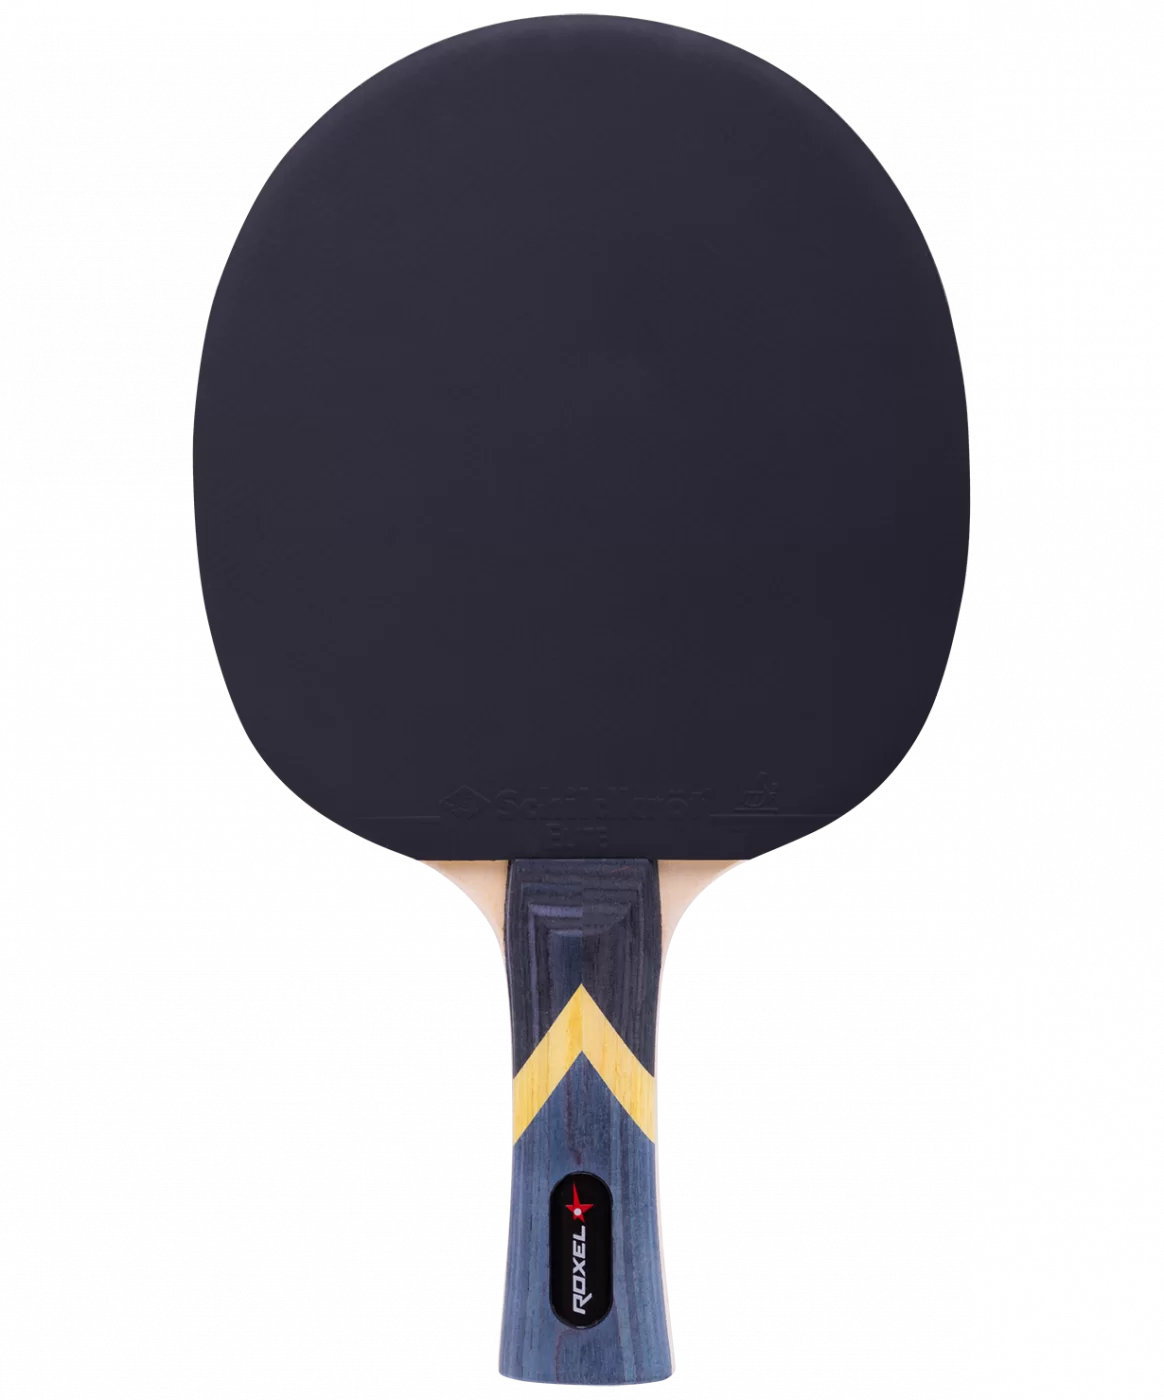 Фото Ракетка для настольного тенниса Roxel 1* Forward коническая 15355 со склада магазина СпортСЕ